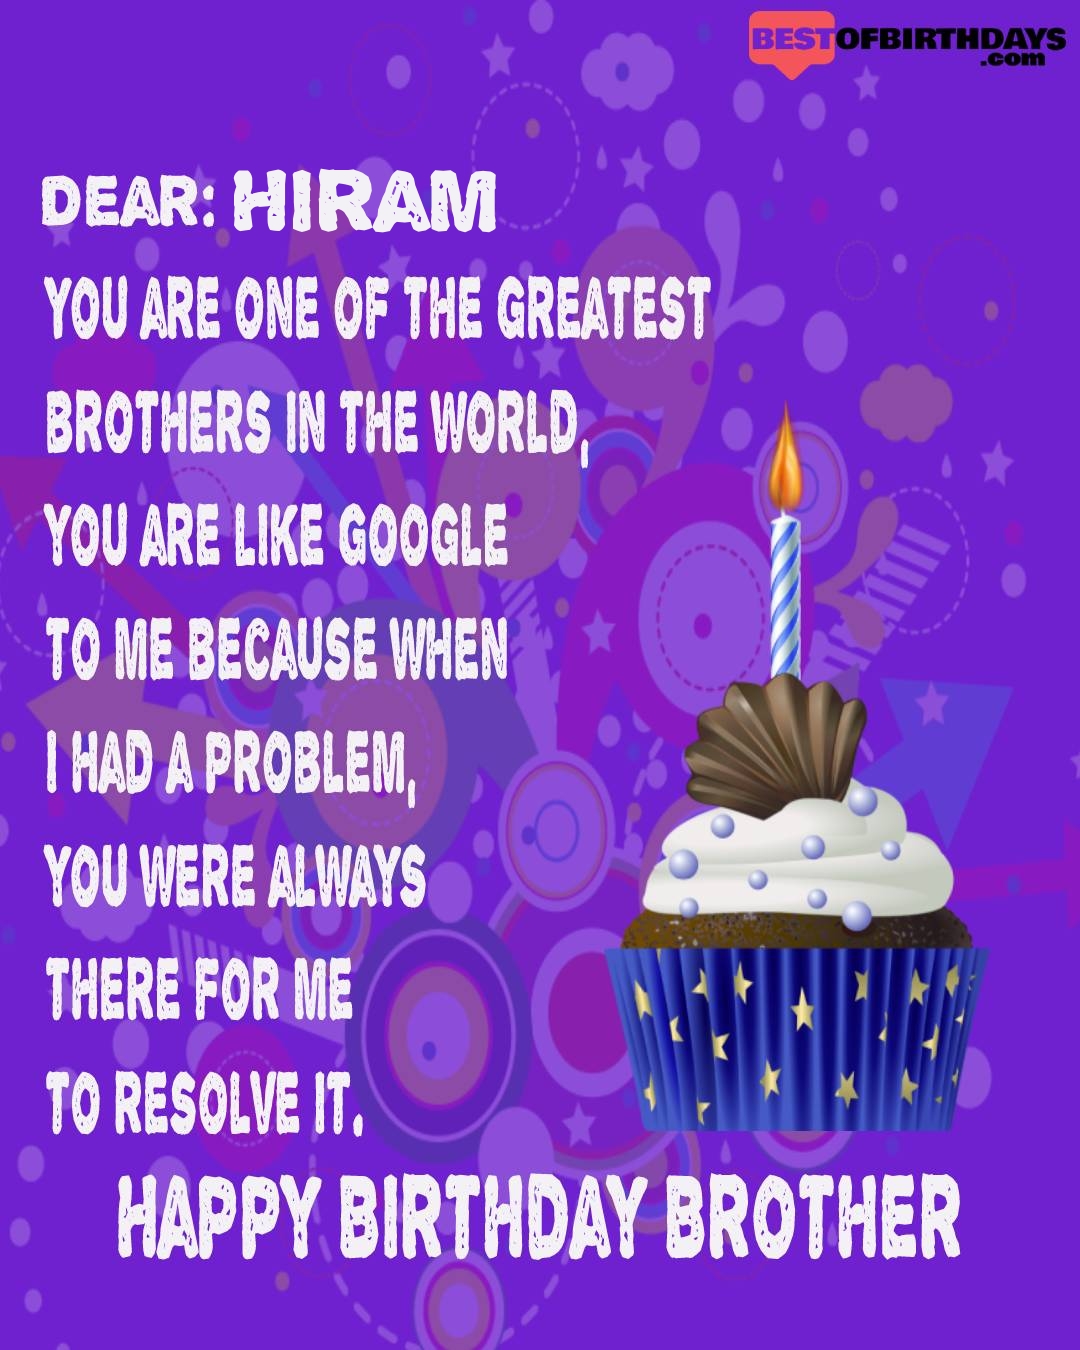 Happy birthday hiram bhai brother bro